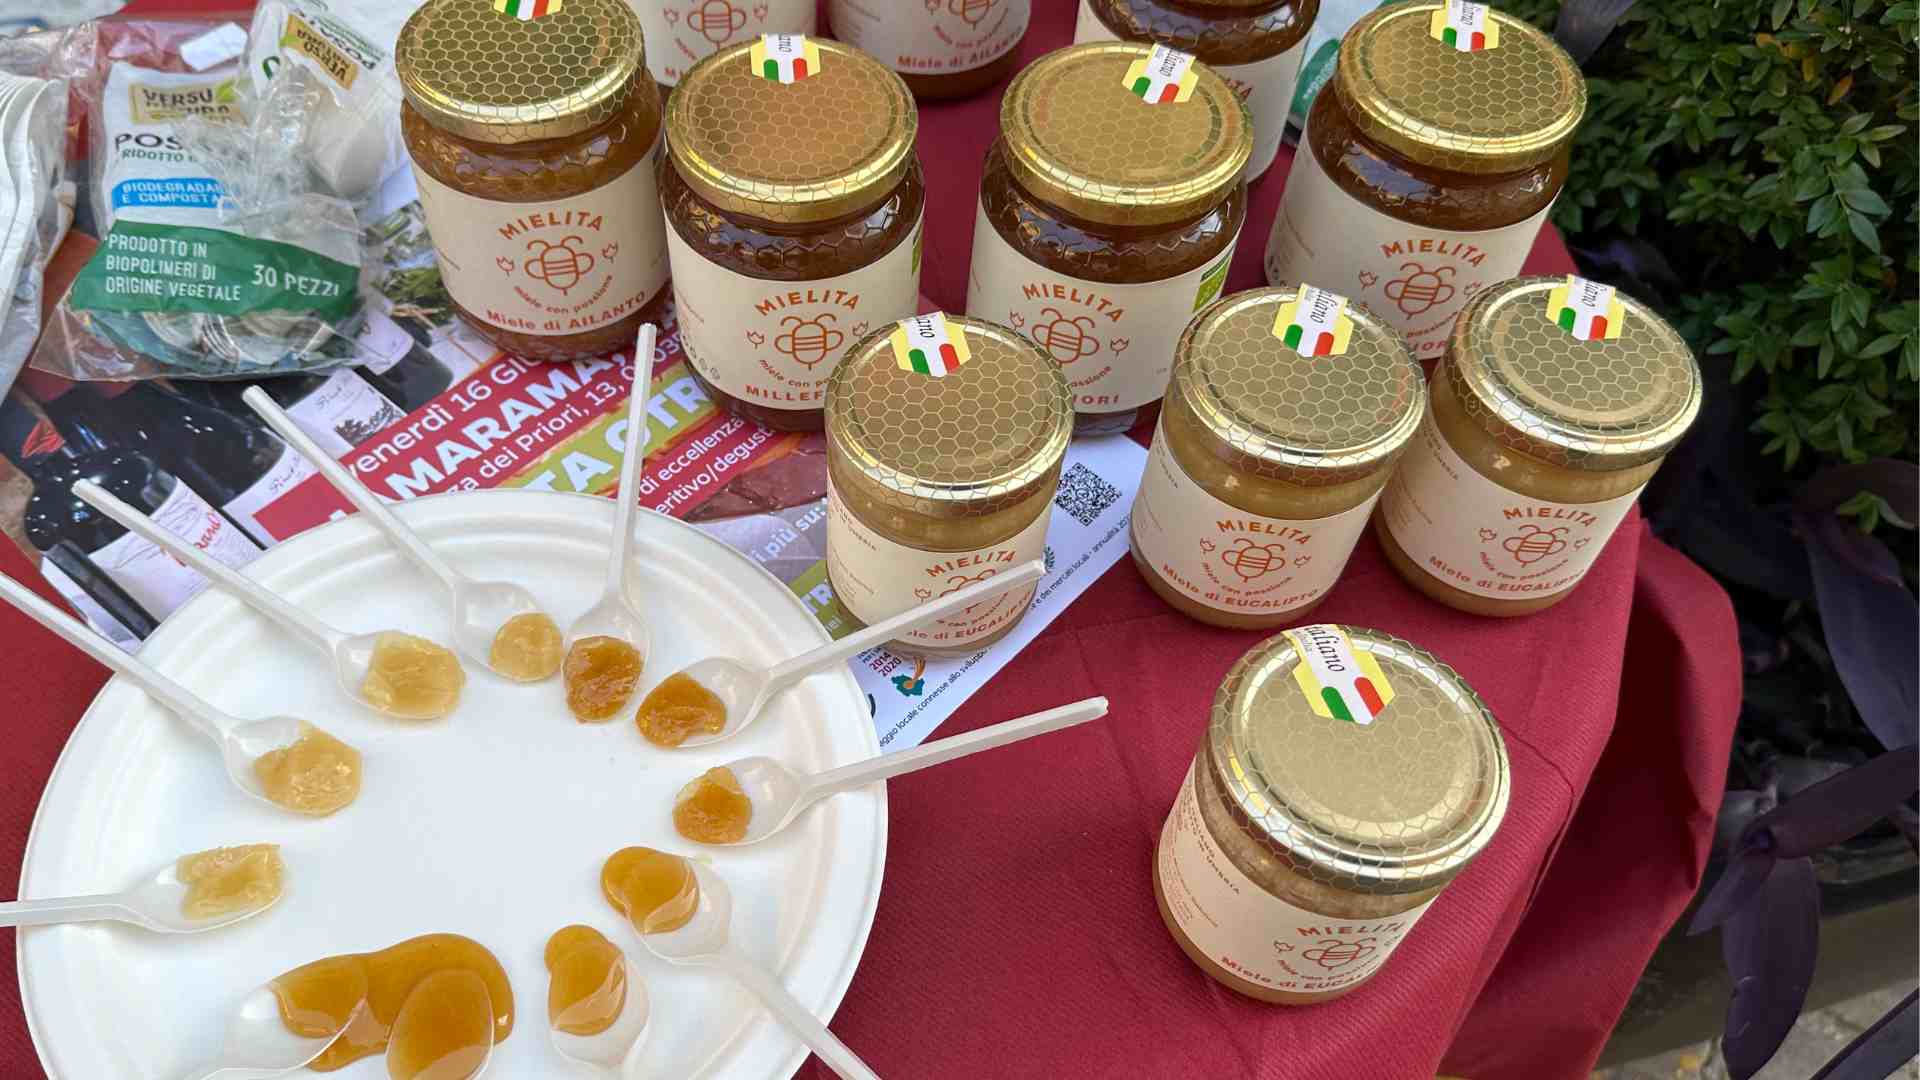 Miele e barattoli di miele Mielita durante la degustazione a Narni "Degusta Otricoli"